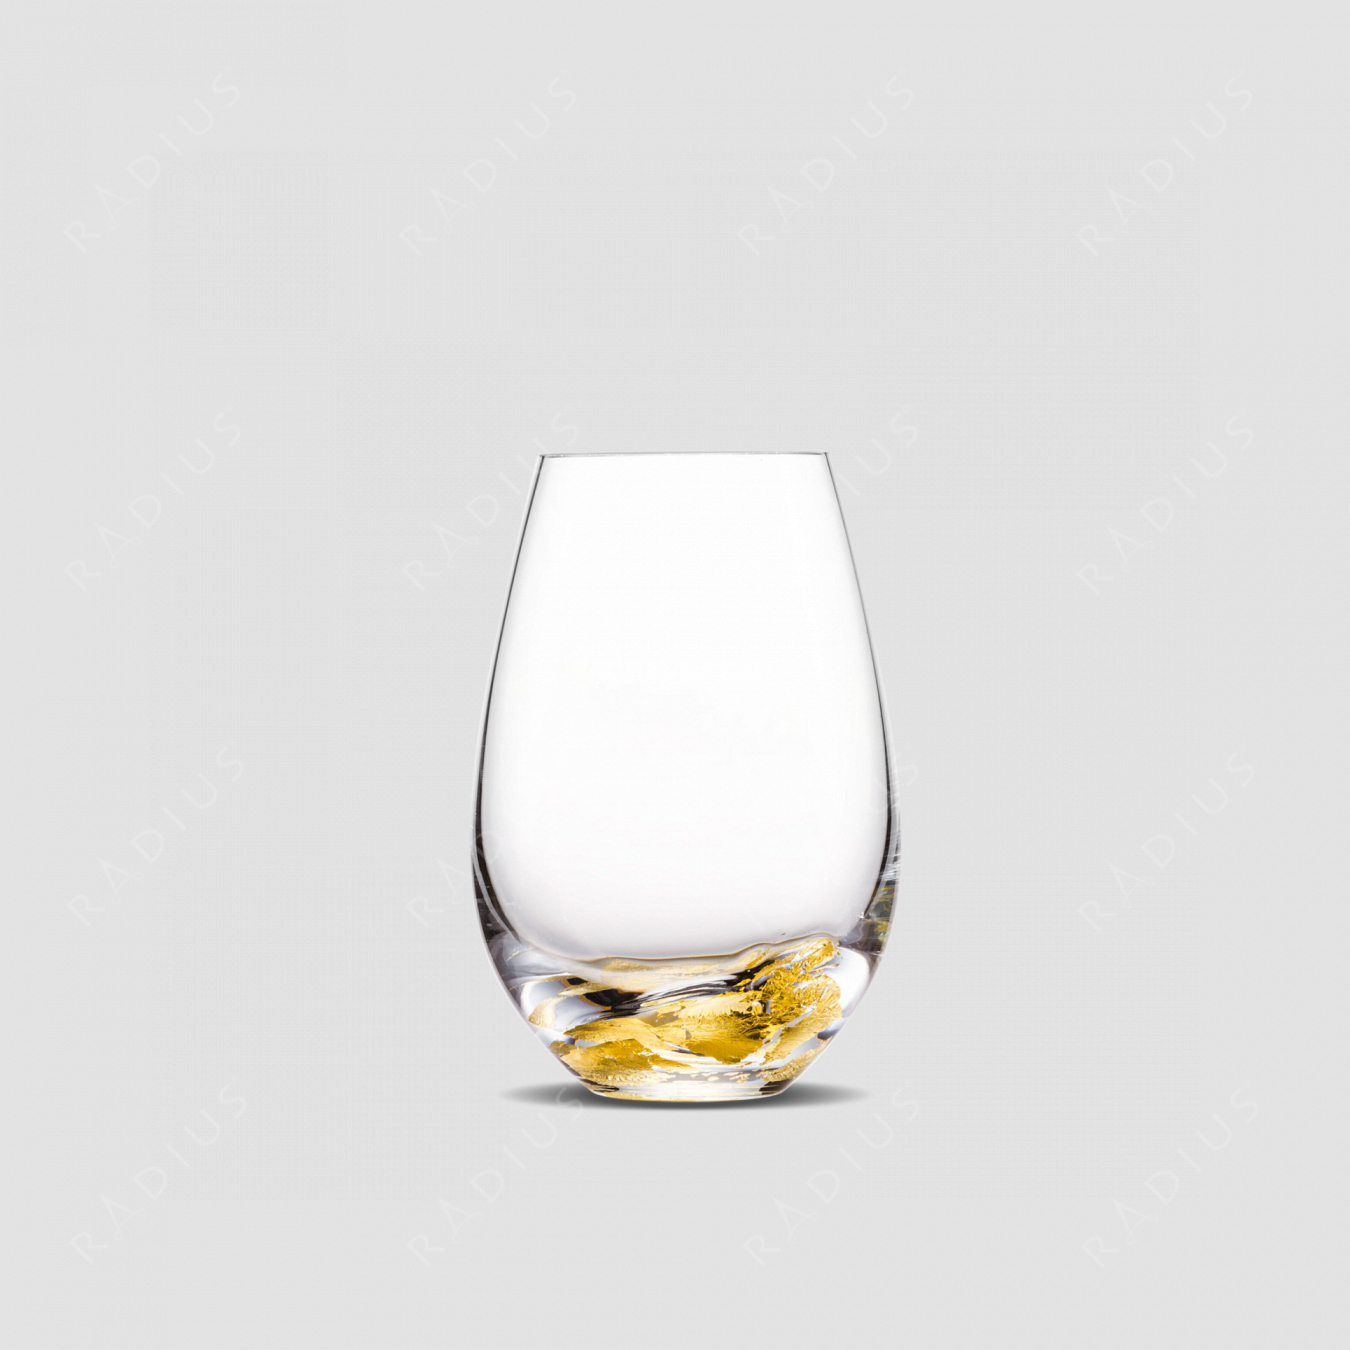 Стакан для виски, объем: 440 мл, материал: бессвинцовый хрусталь, цвет: прозрачный/золото, серия Aurum, EISCH, Германия